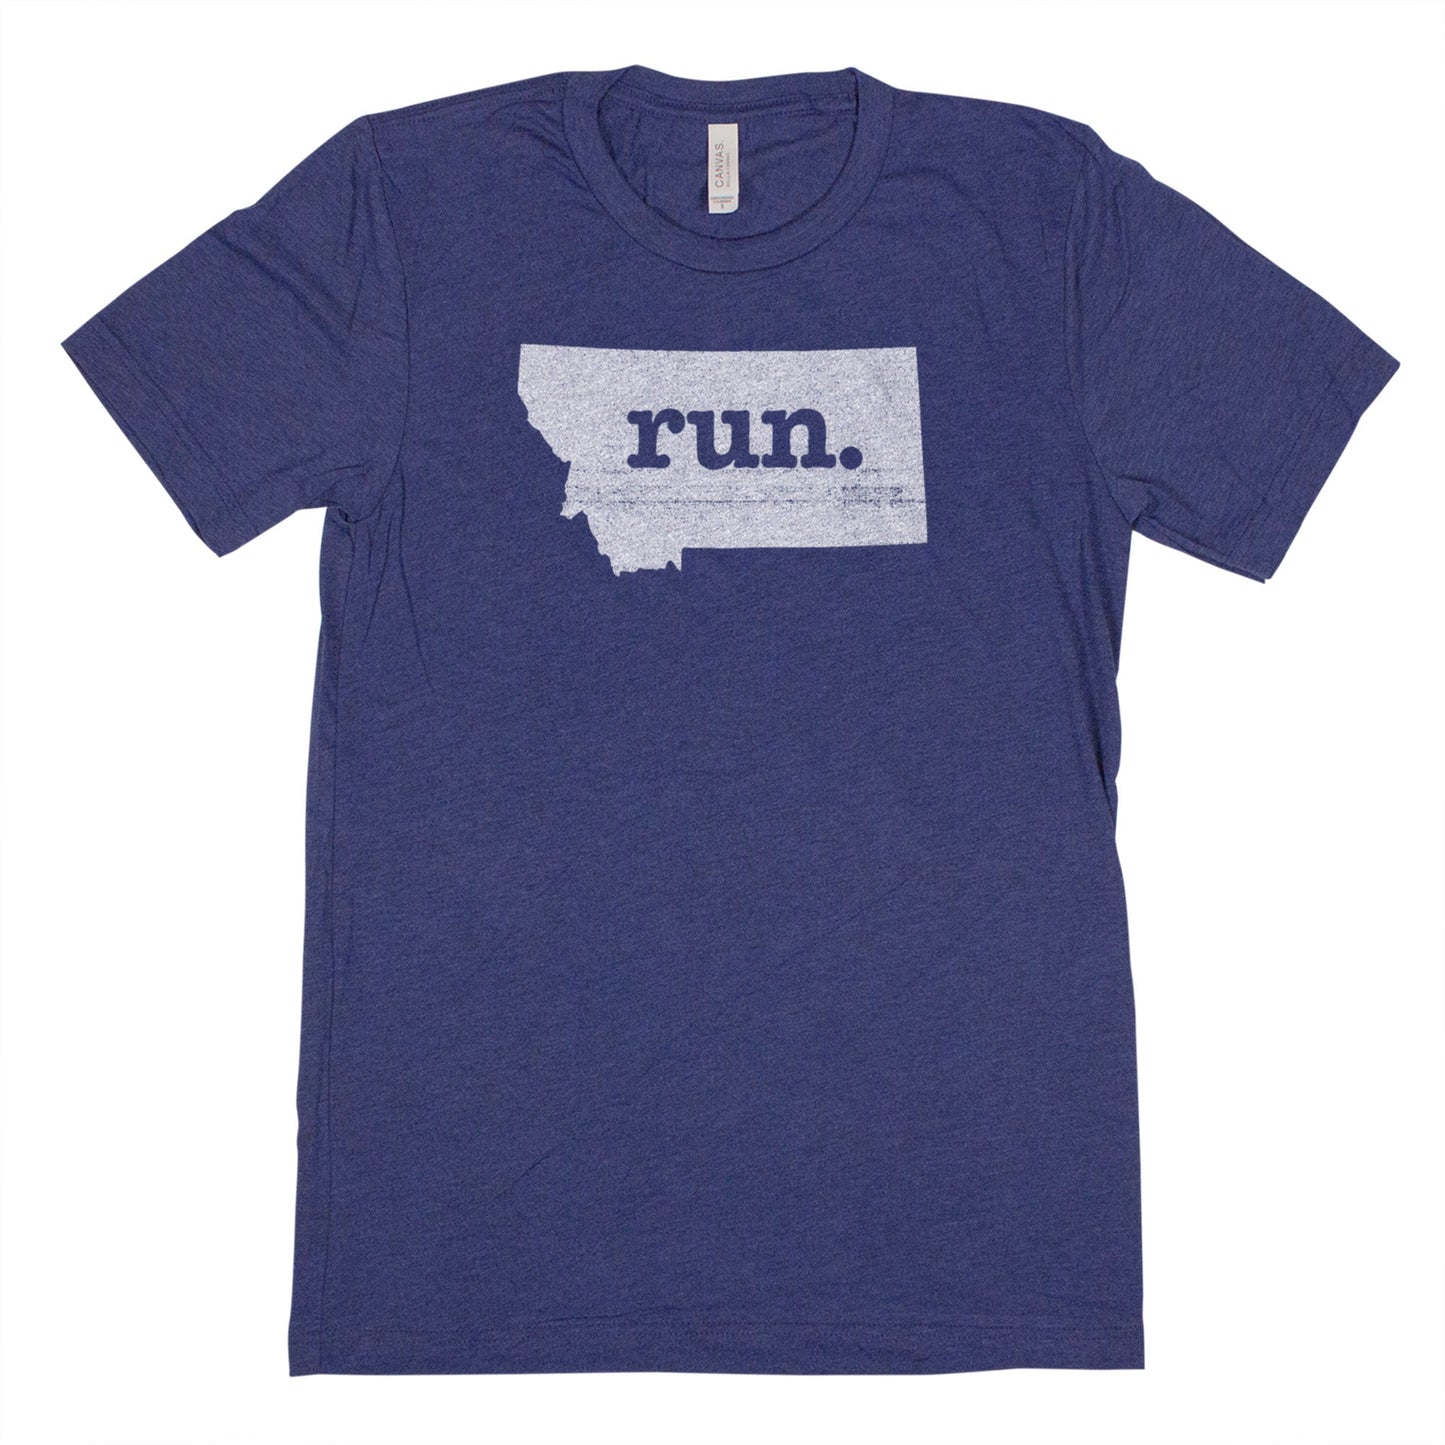 run. Men's Unisex T-Shirt - Montana